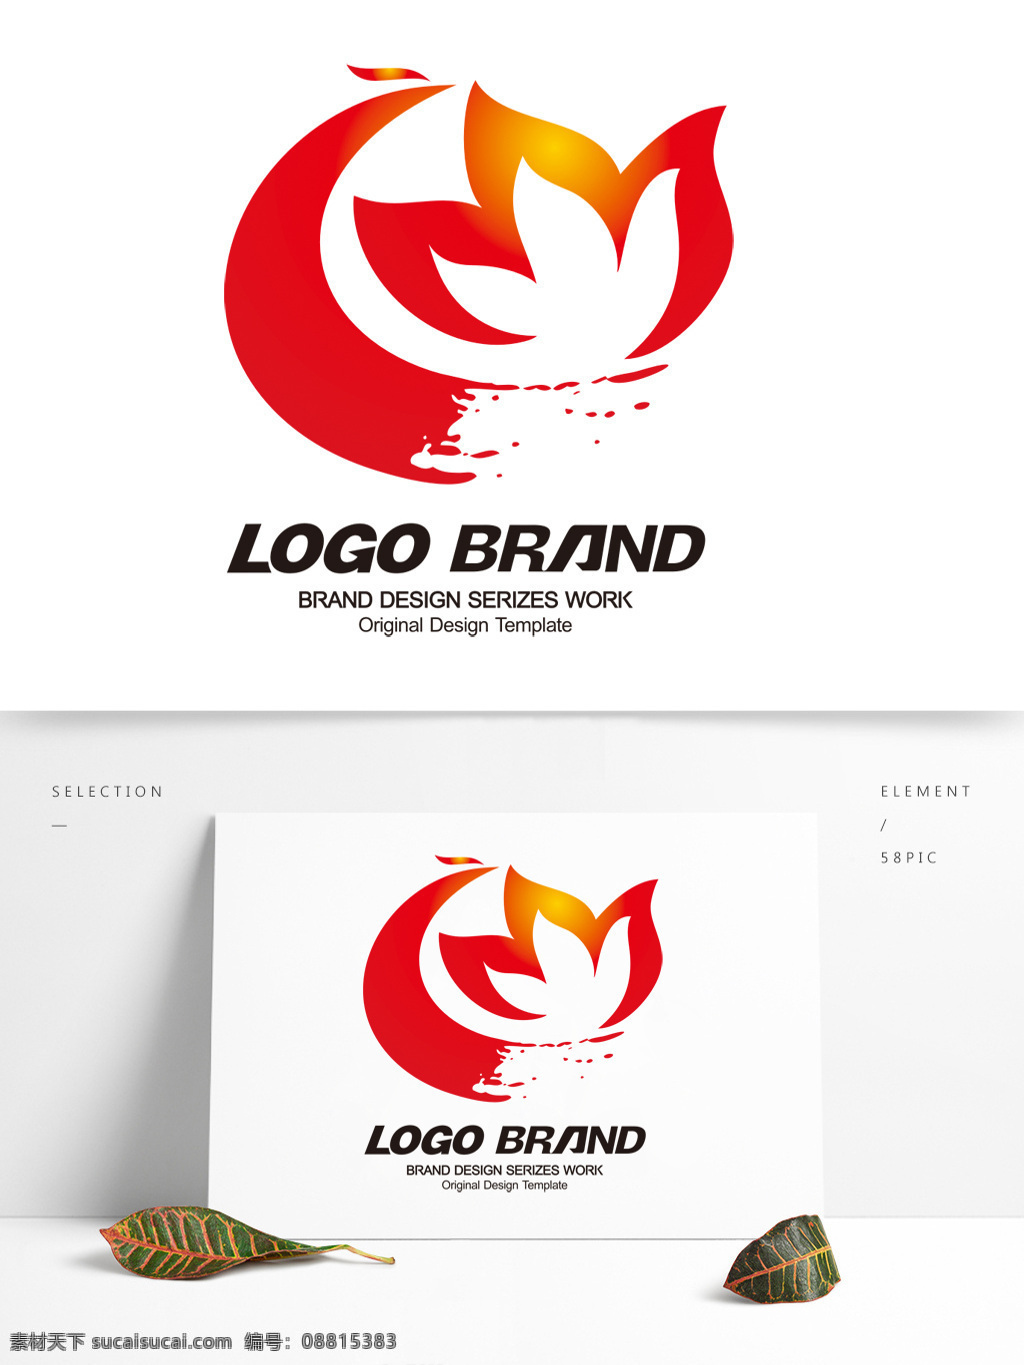 中国 风 大气 红色 荷花 凤凰 标志 公司 logo c 字母 标志设计 d 中国标志设计 公司标志设计 企业 会徽标志设计 企业标志设计